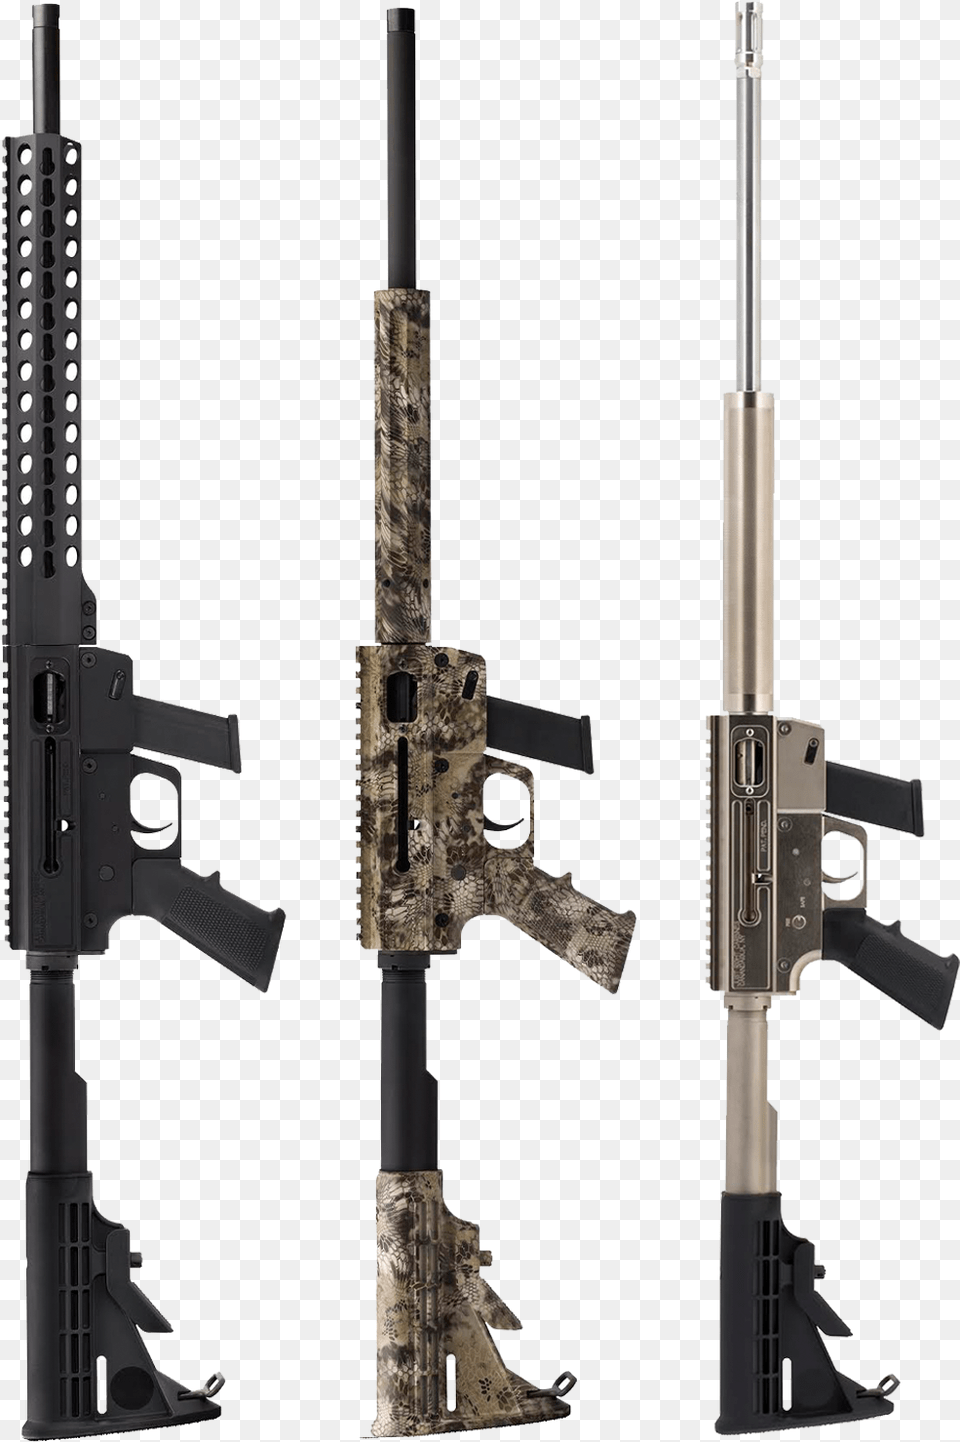 Jr Carbine, Firearm, Gun, Rifle, Weapon Png Image